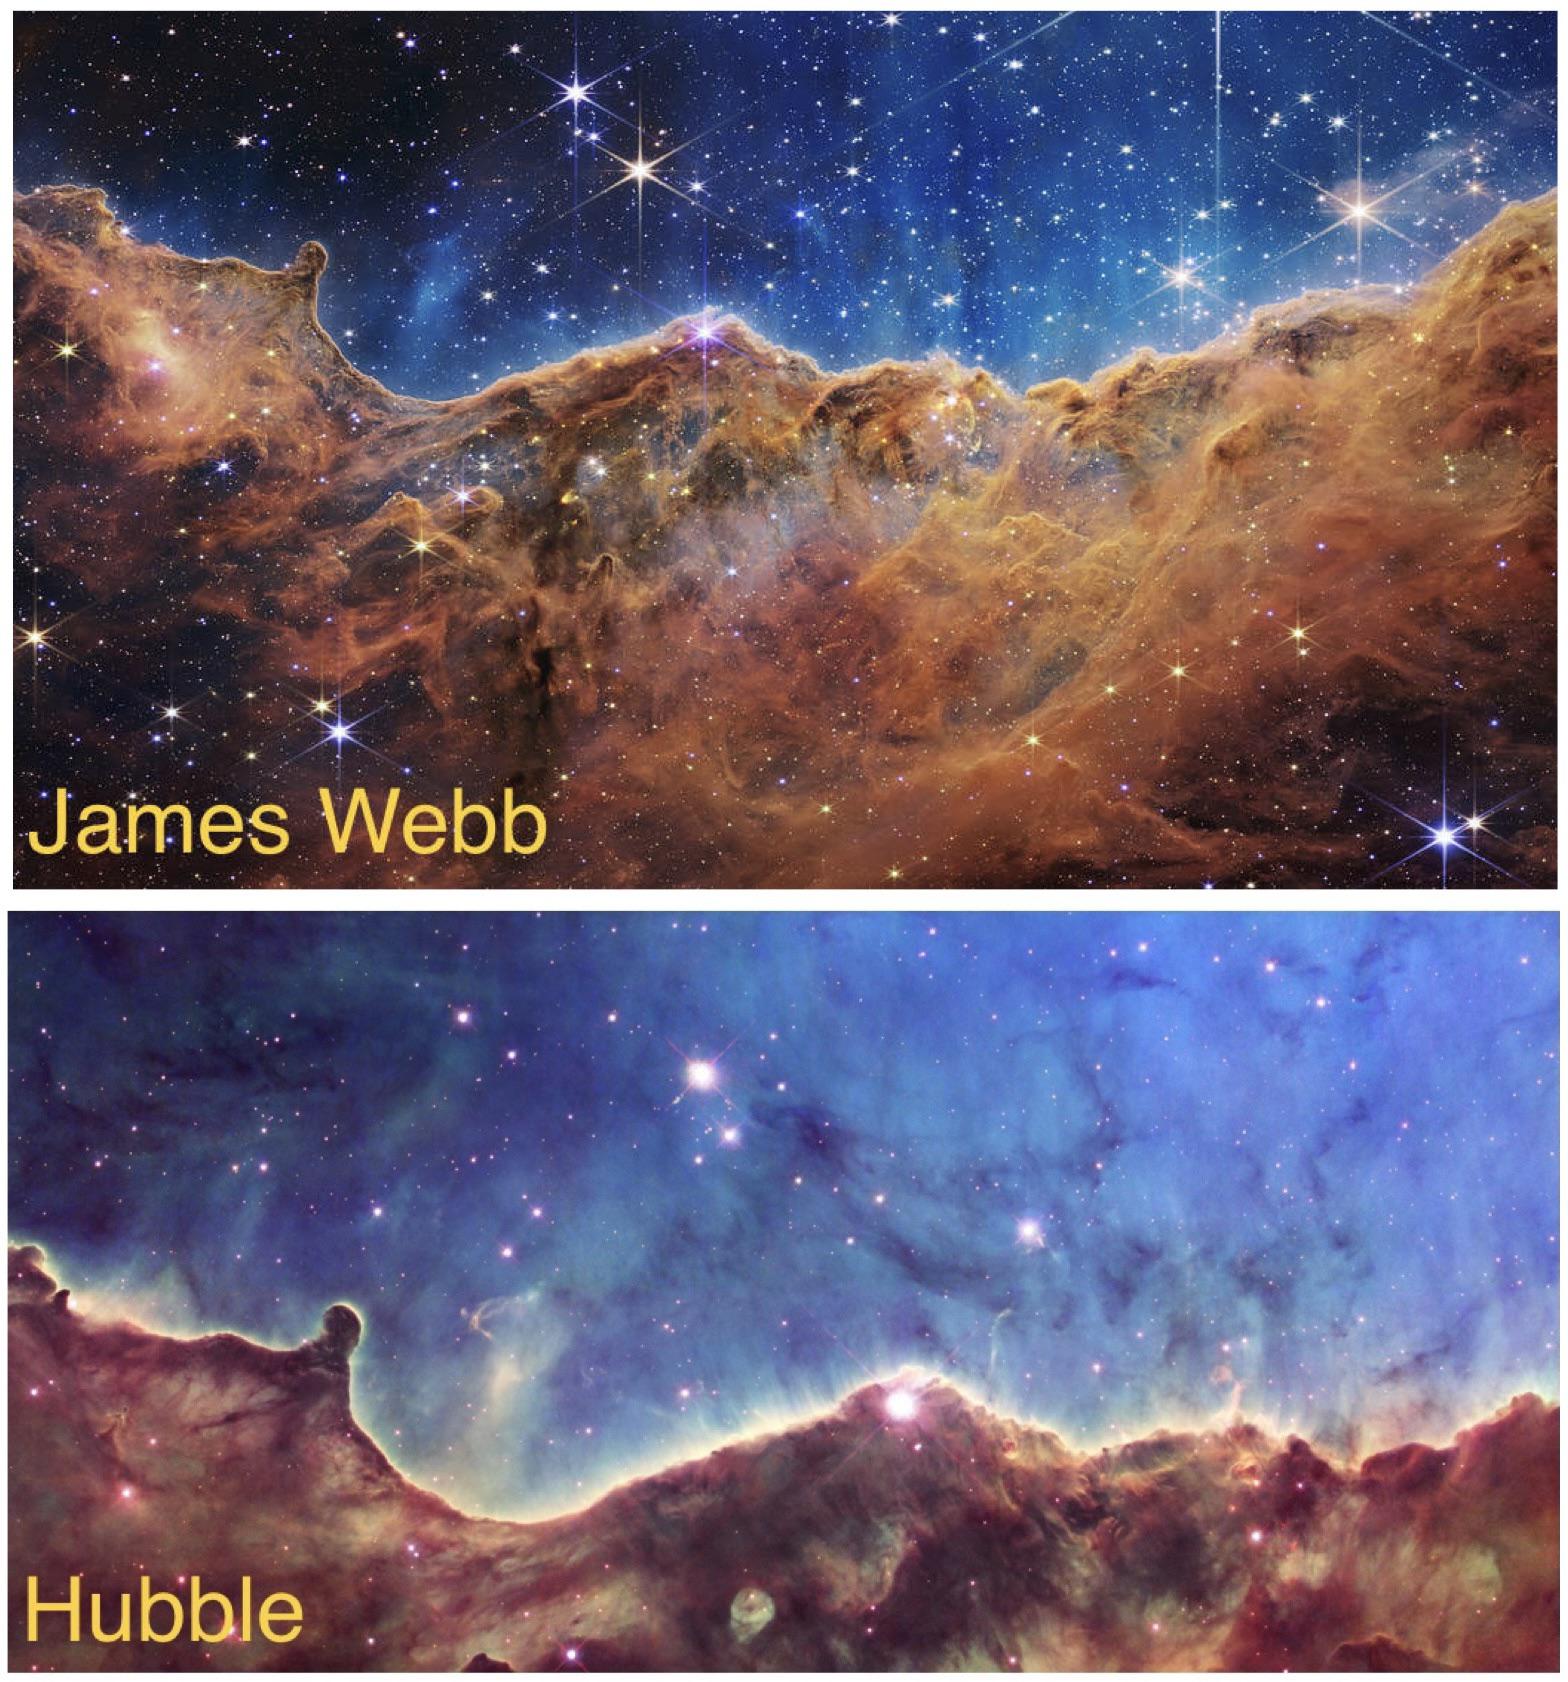 Foto do James Webb comparada à da Hubble